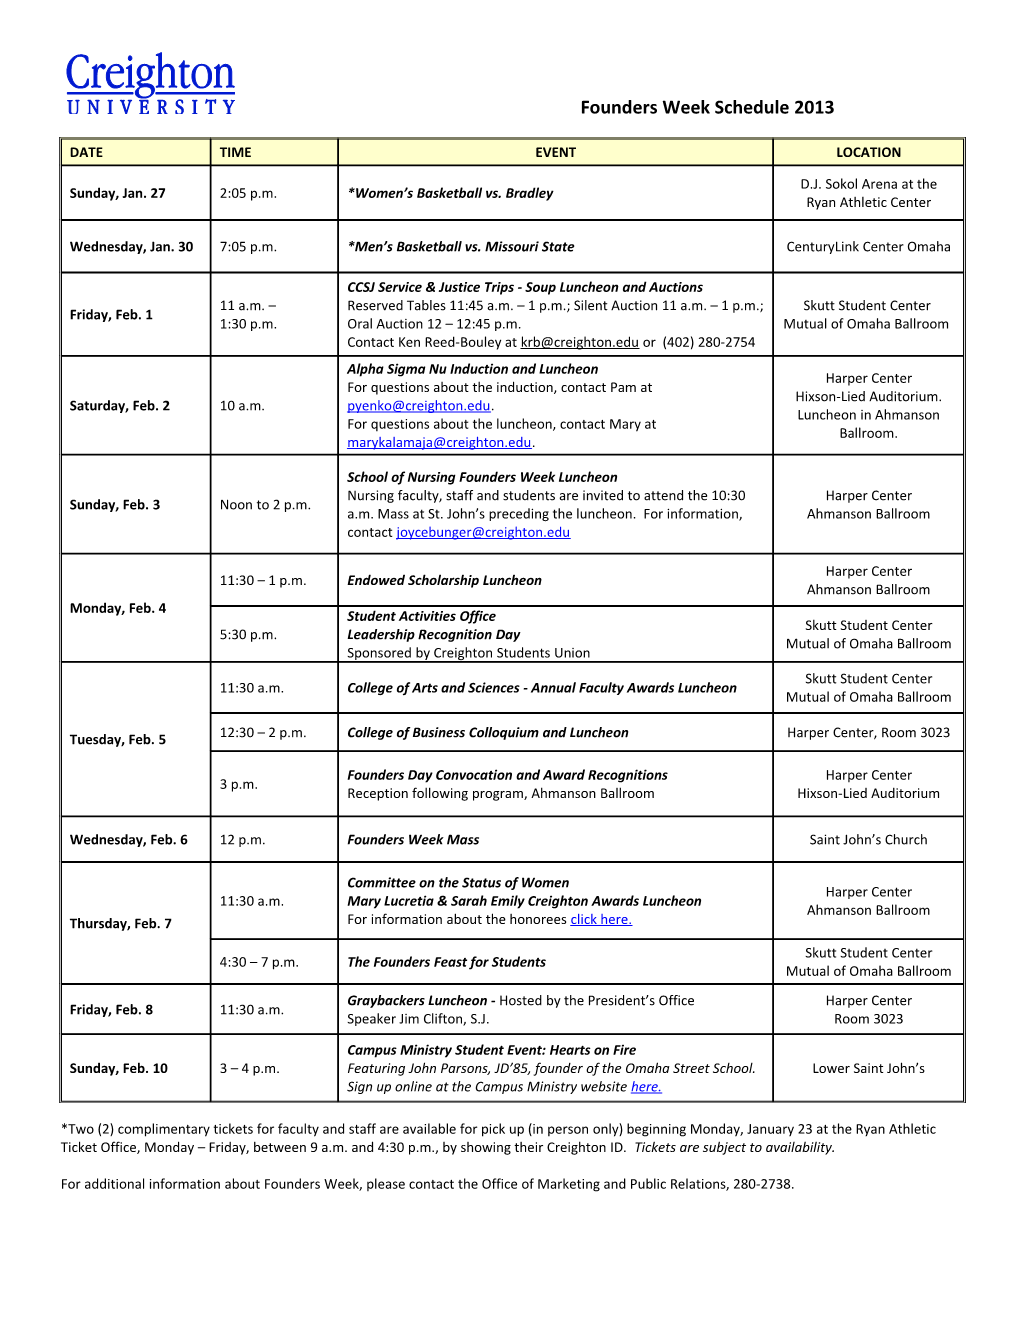 Founders Week Schedule 2013